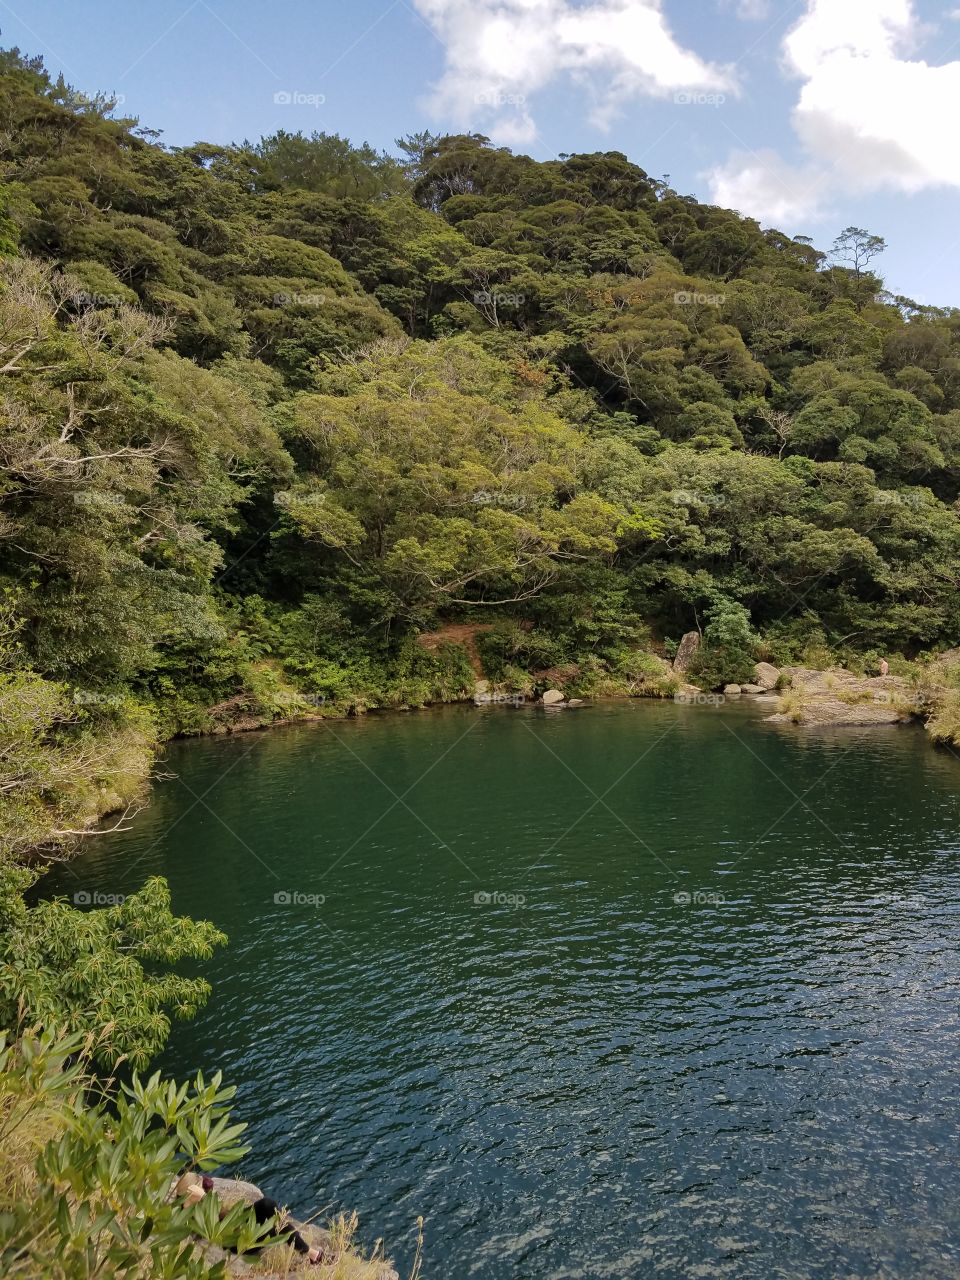 Hidden pond in Okinawa Prefecture